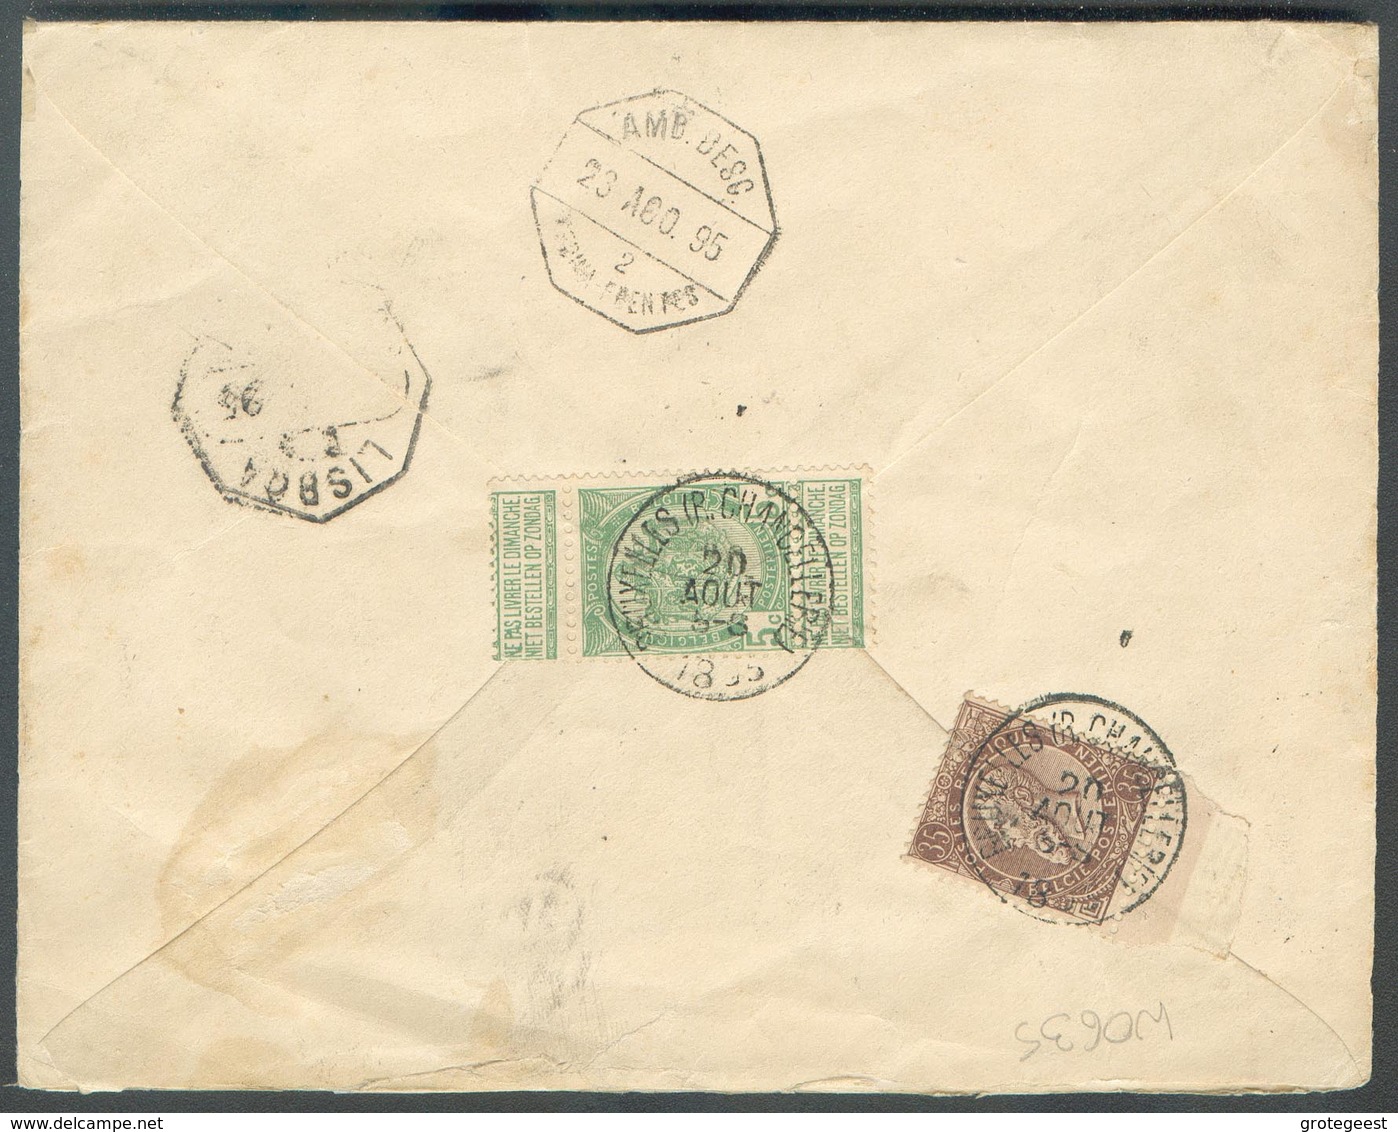 N°49-56 - 5 Centimes FIne Barbe Et 35 Centimes Em. 1884 En Affr. Complémentaire (au Verso) Sur E.P. Env. 10c.(Em. 1869) - Enveloppes